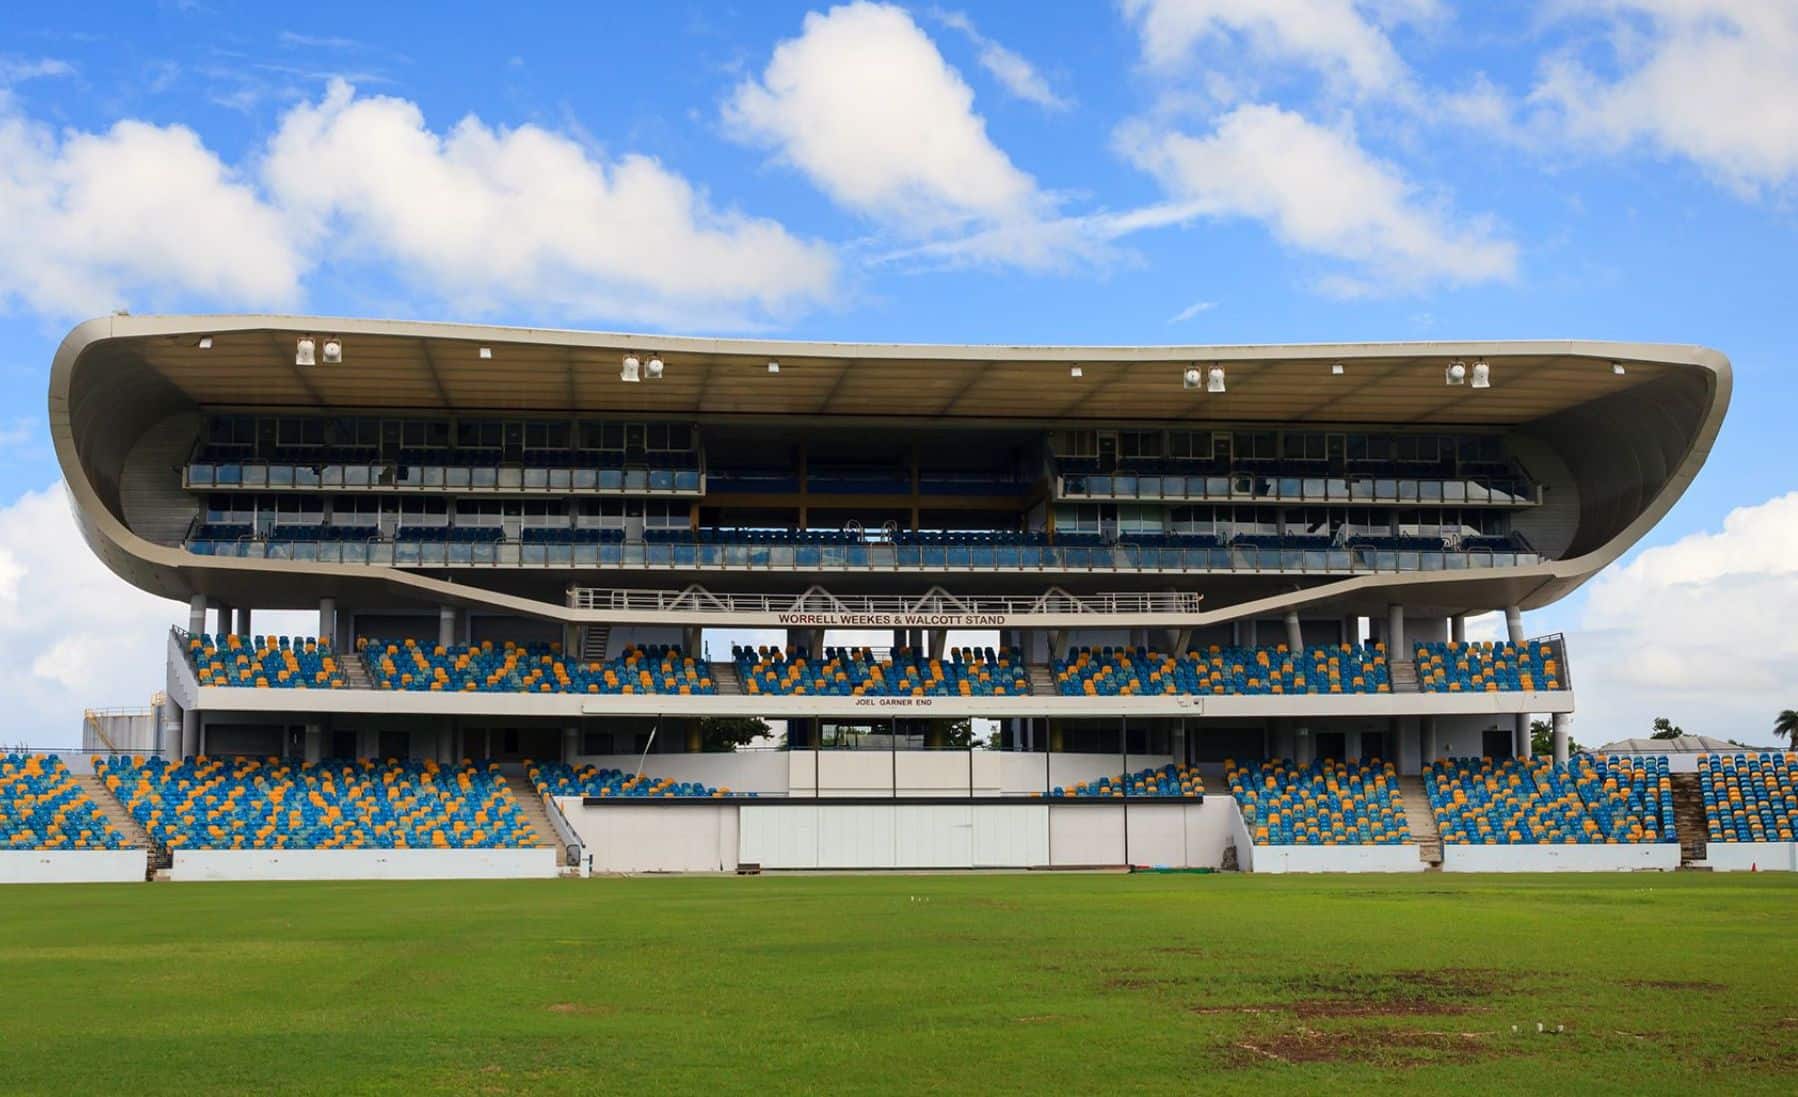 The Kensington Oval, Barbados (X.com)